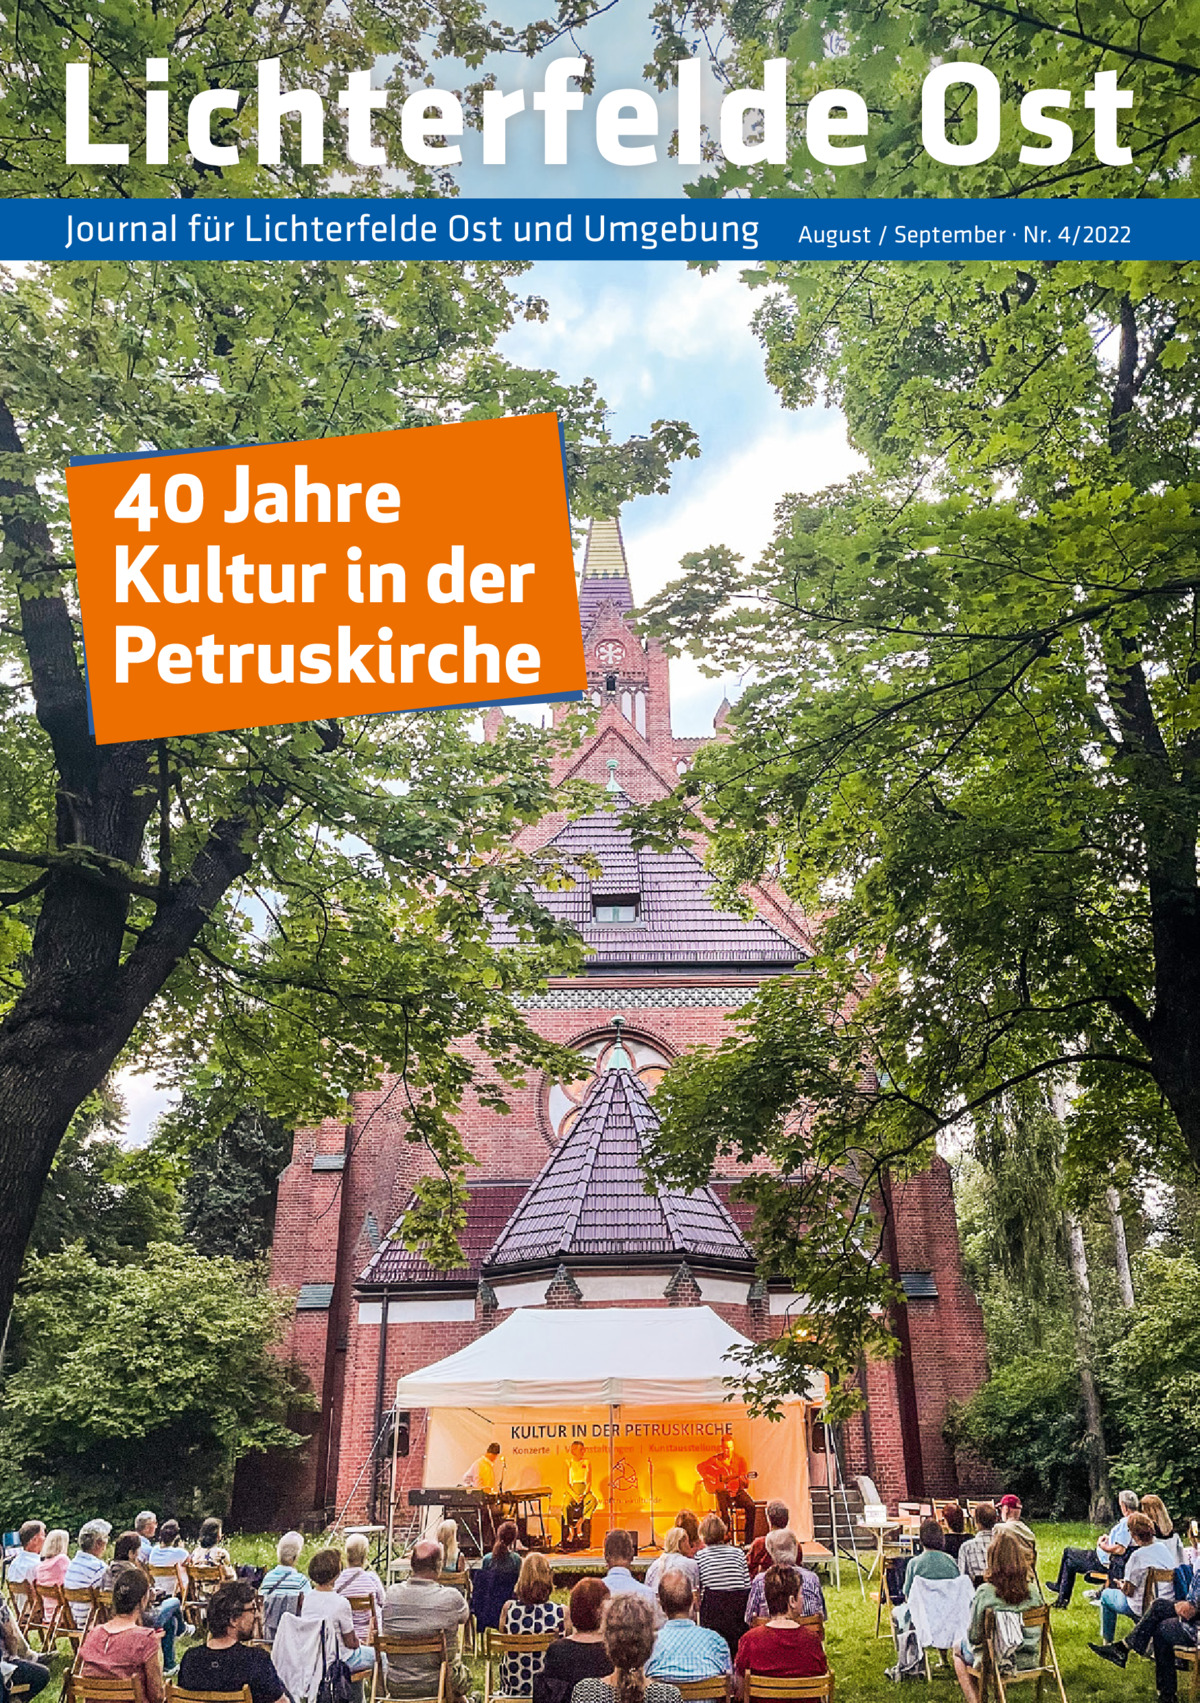 Lichterfelde Ost Journal für Lichterfelde Ost und Umgebung  40 Jahre Kultur in der Petruskirche  August / September · Nr. 4/2022